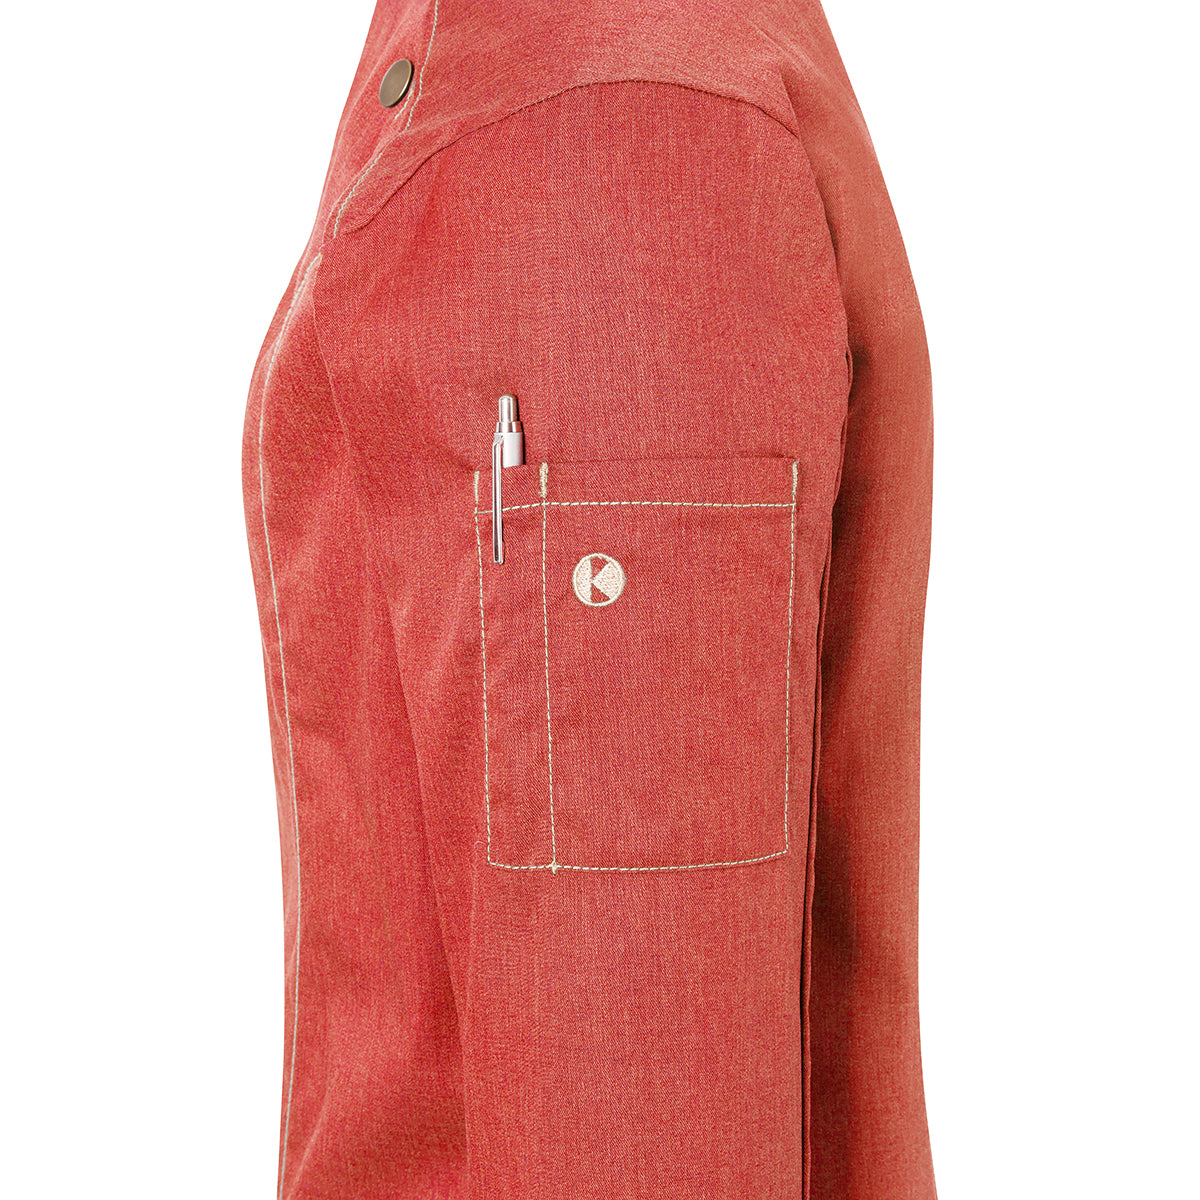 (6 stk) Karlowsky DAME kokkejakke i jeans-stil - vintage rød - str. 52